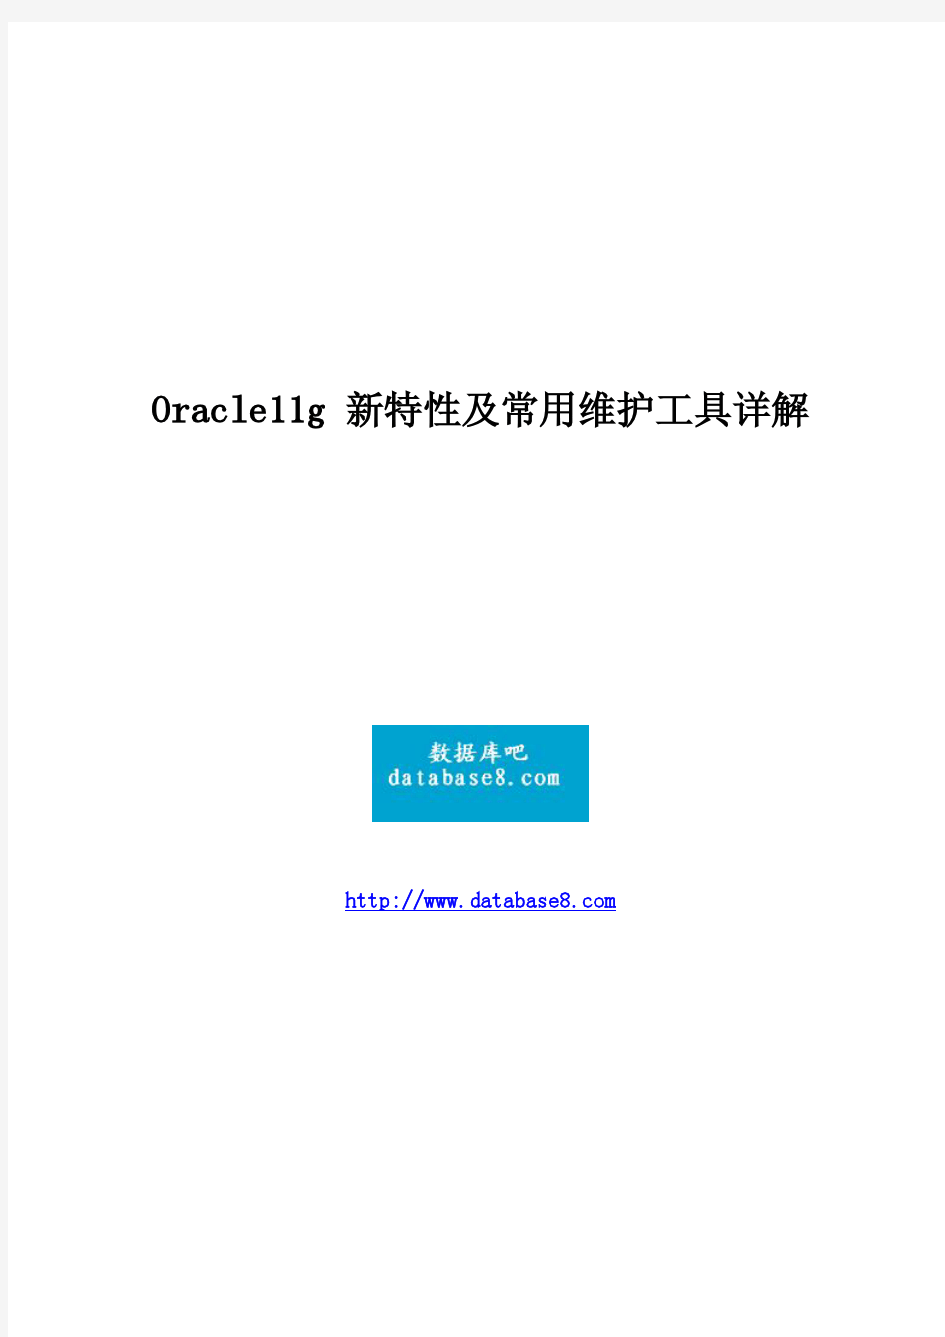 Oracle11g_新特性及常用维护工具详解